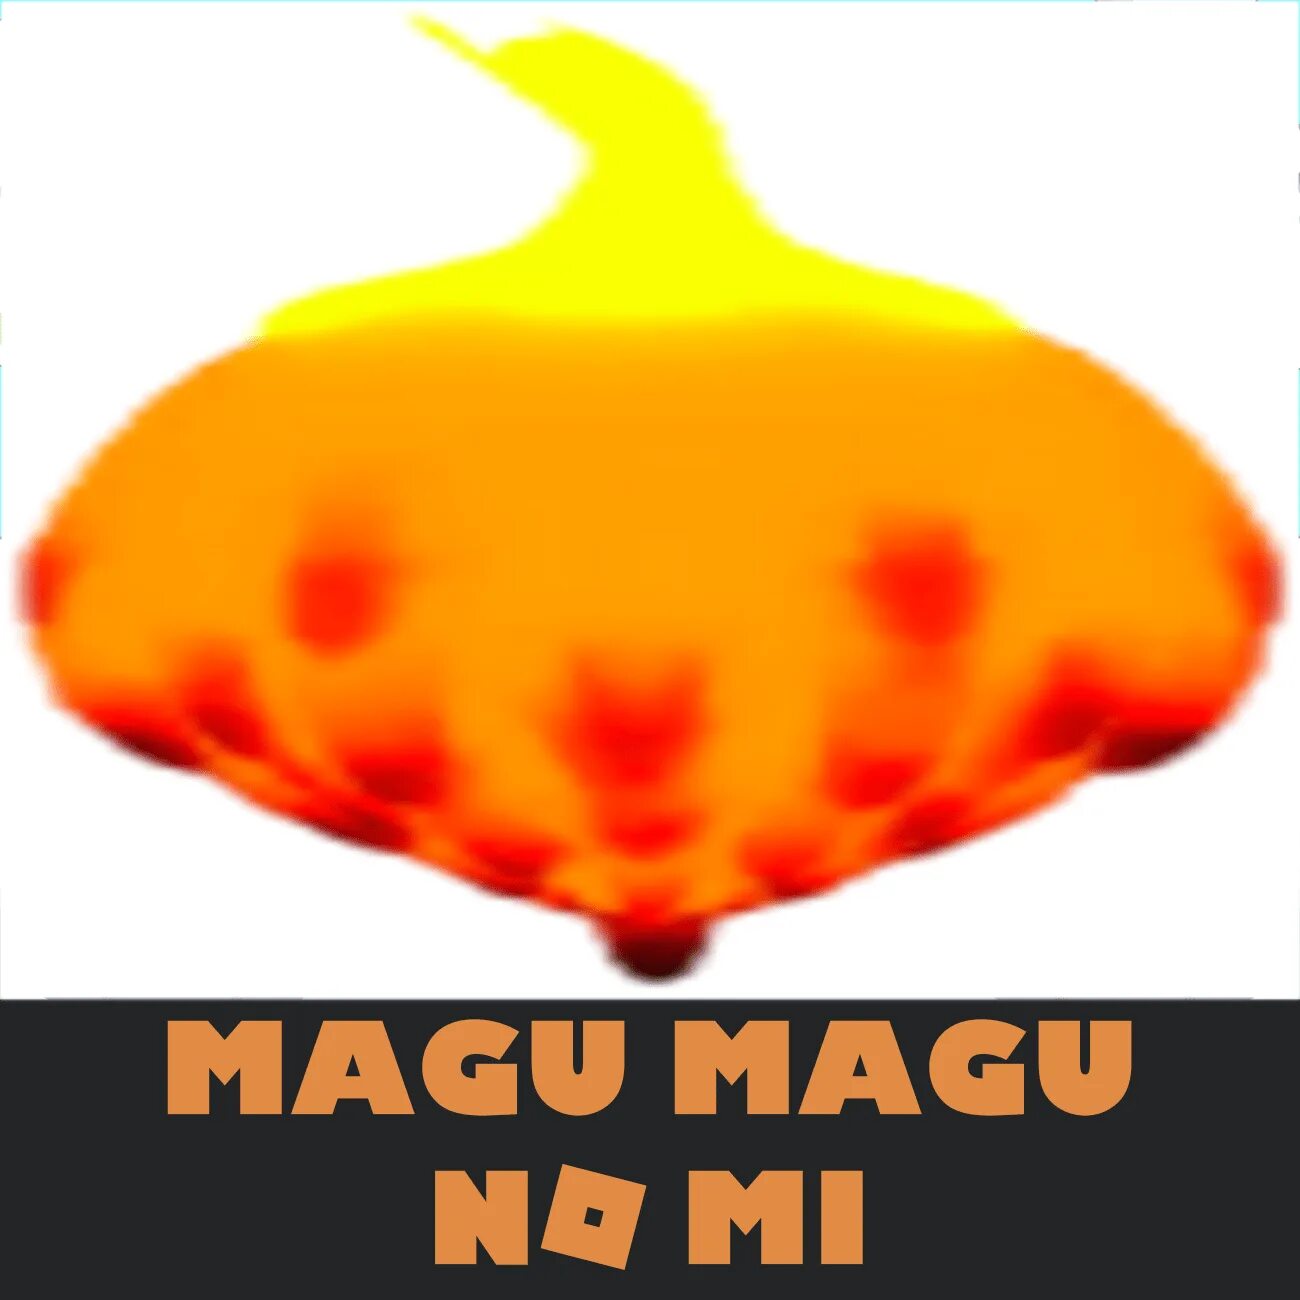 Magu Magu no mi GPO. Фрукт Magu Magu. Фрукты ГПО РОБЛОКС. Magu Magu no mi Fruit.